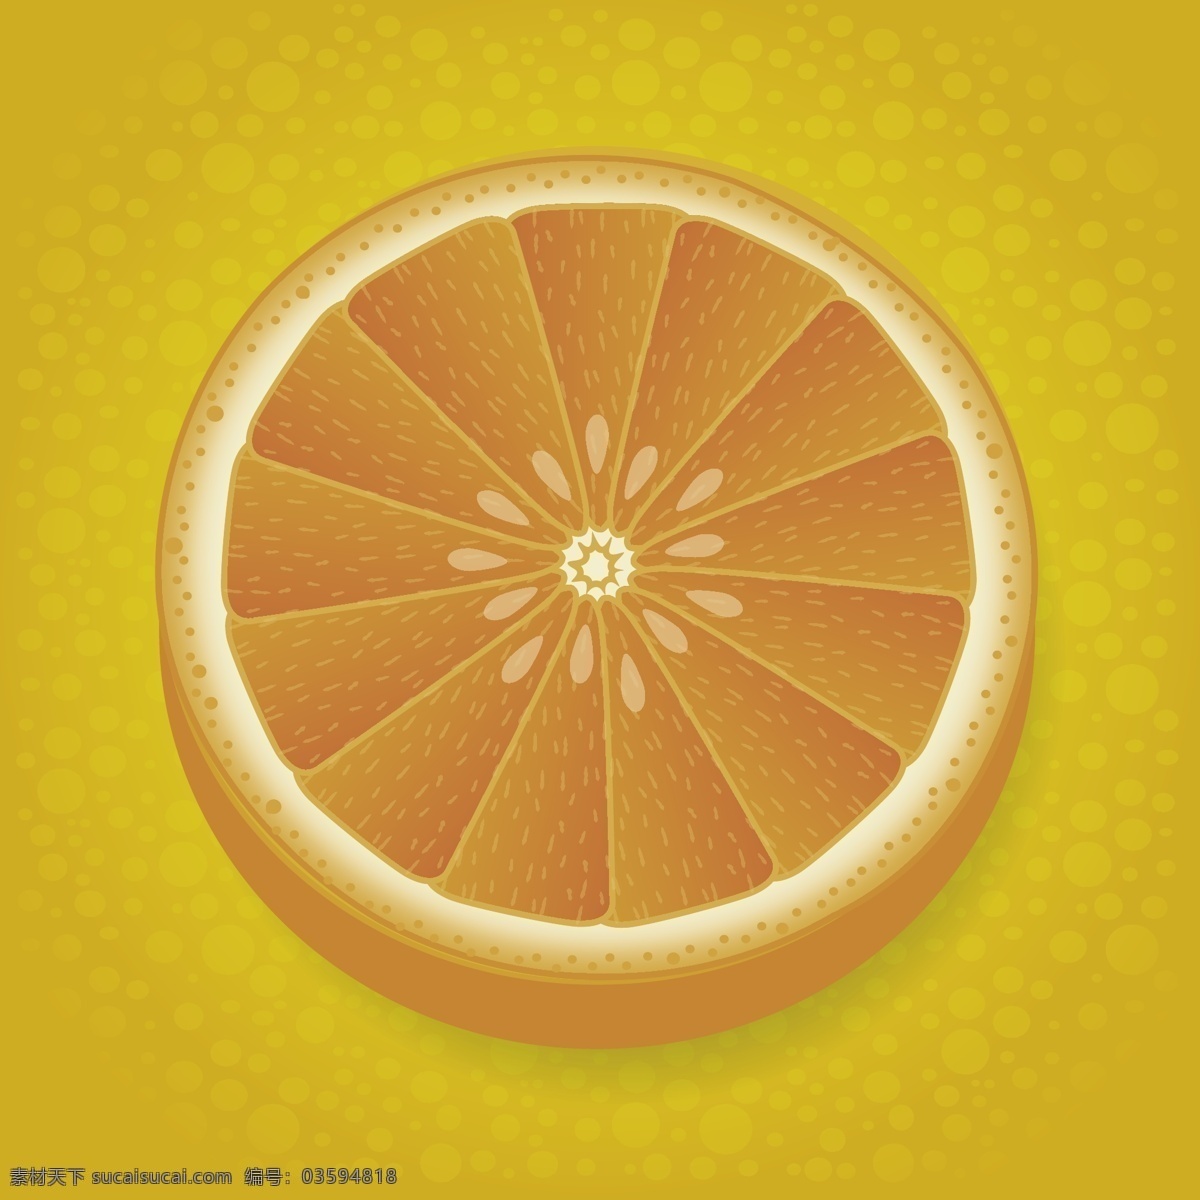 半橙色背景 背景 食品 自然 水果 柑橘 有机 甜 健康 甜点 饮食 健康食品 新鲜 有机食品 一半 美味 切片 黄色